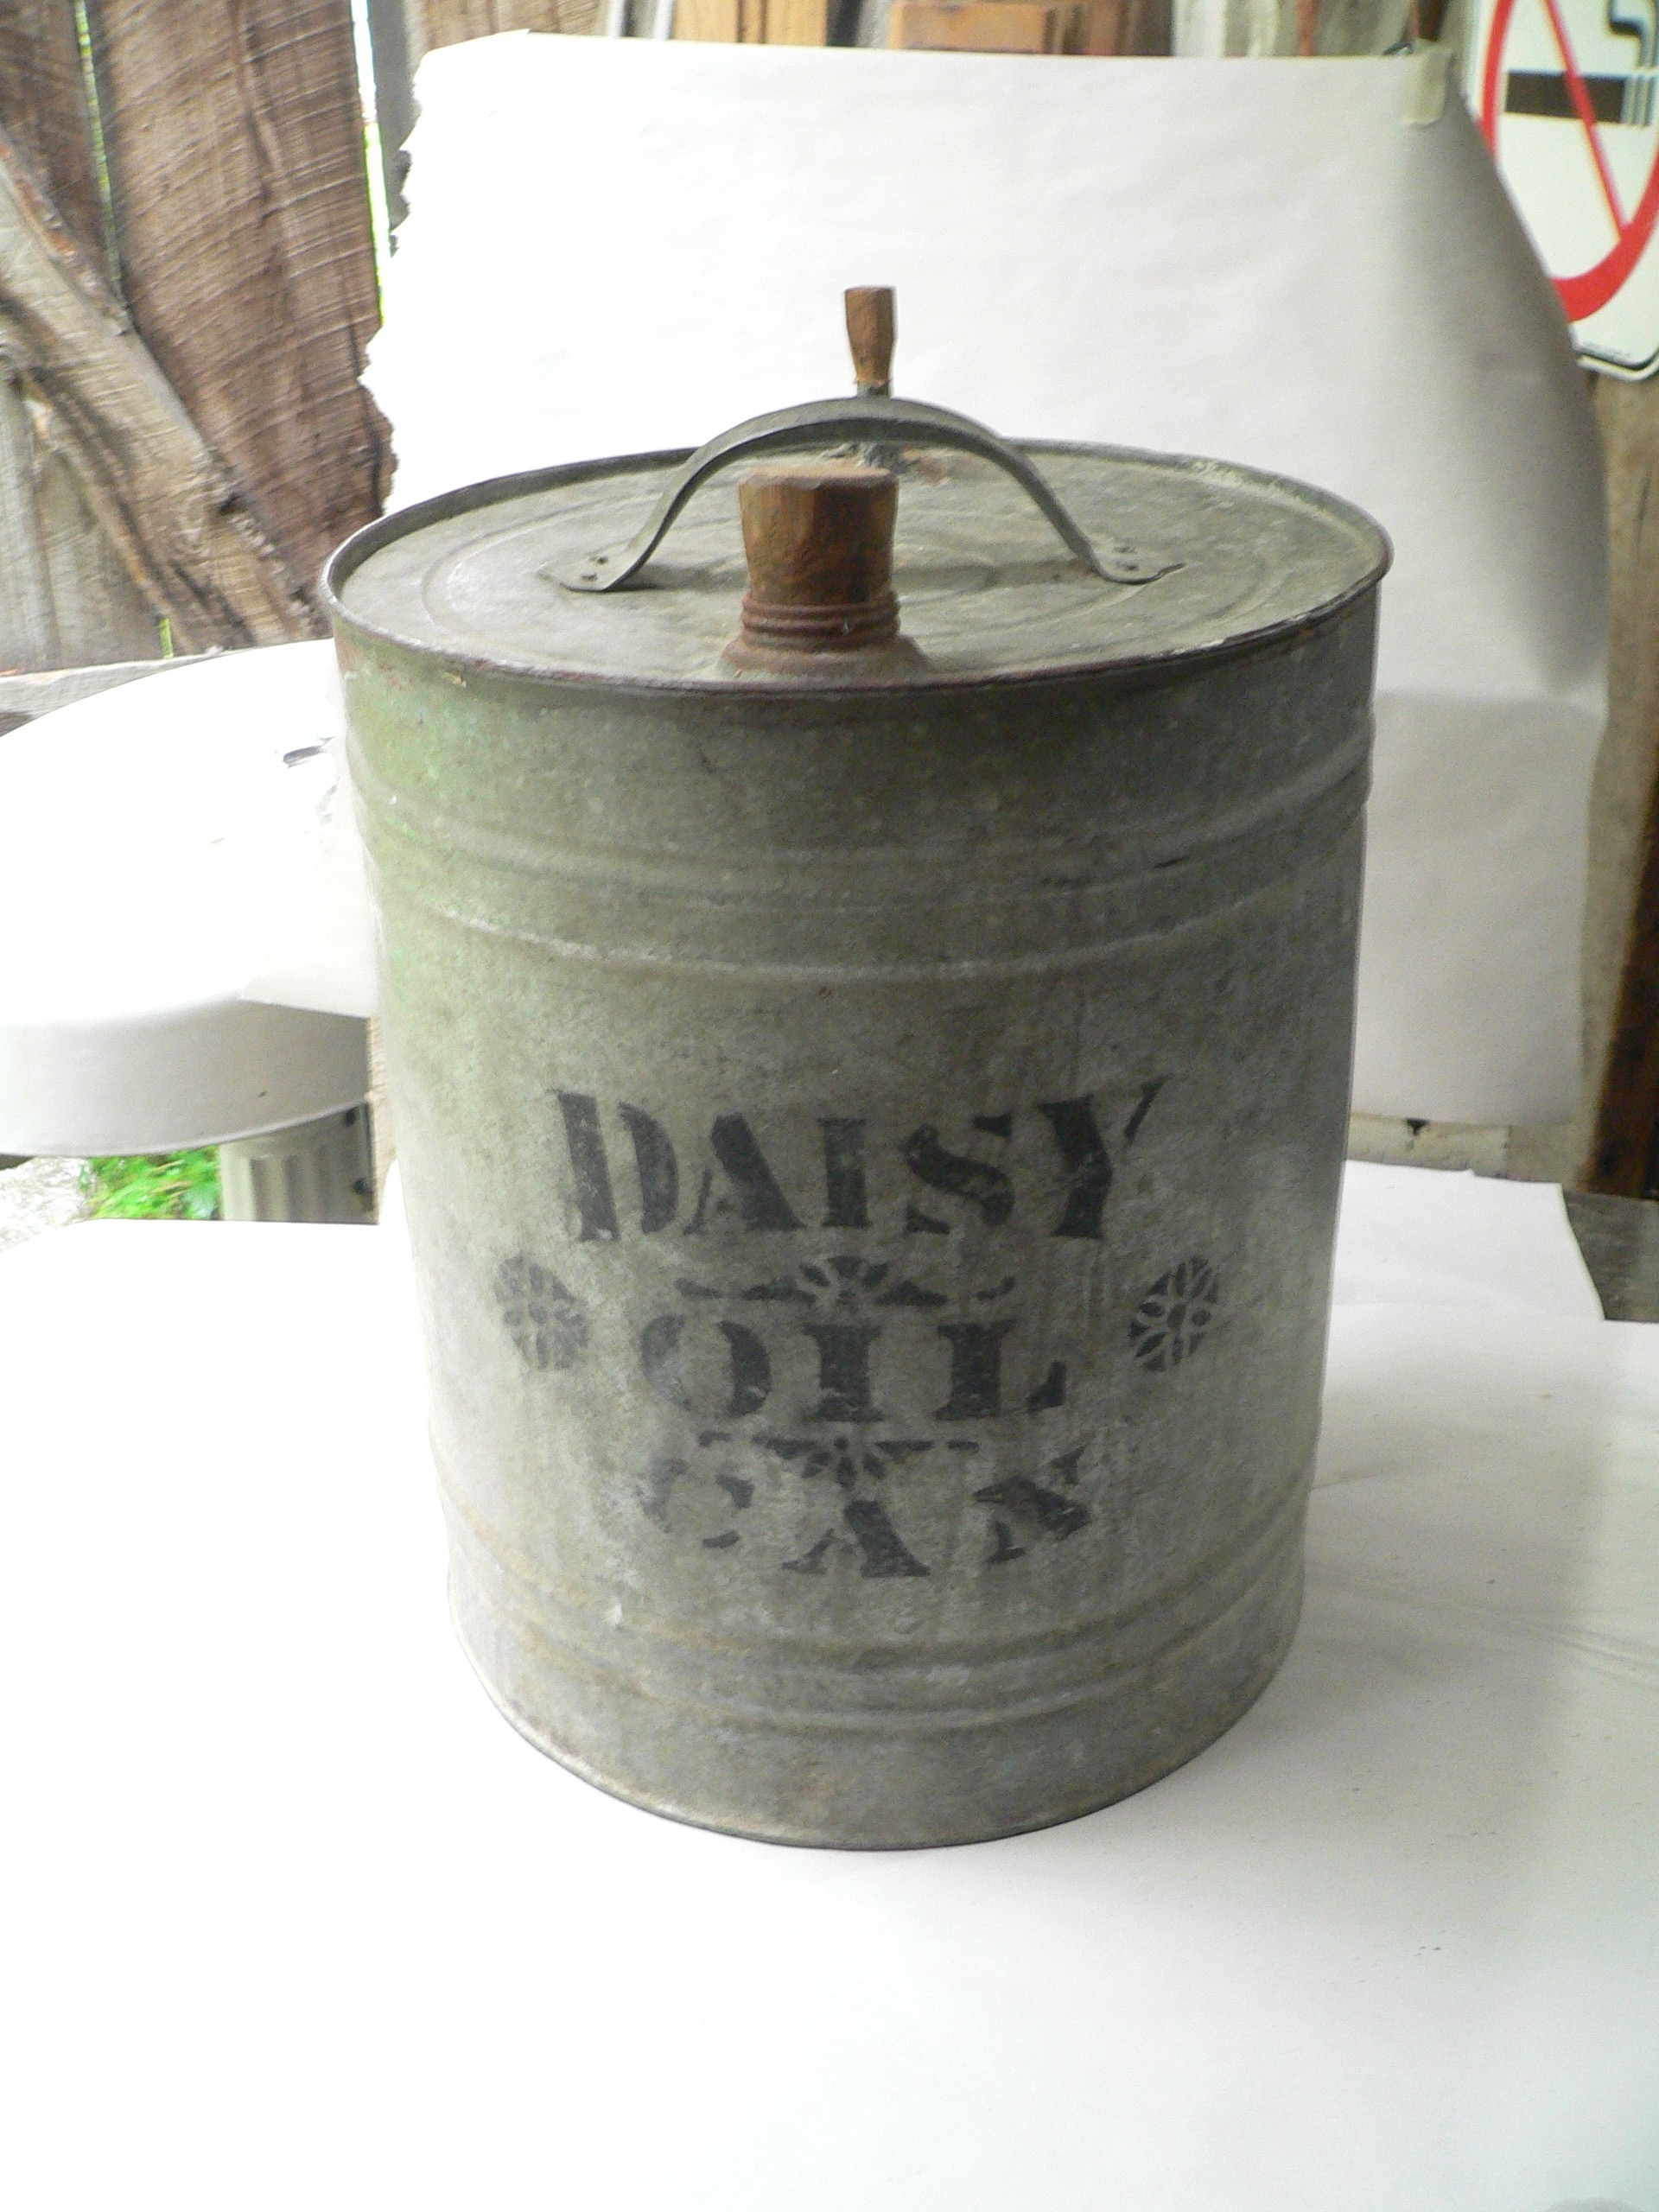 Bidon antique Daisy oil # 11281